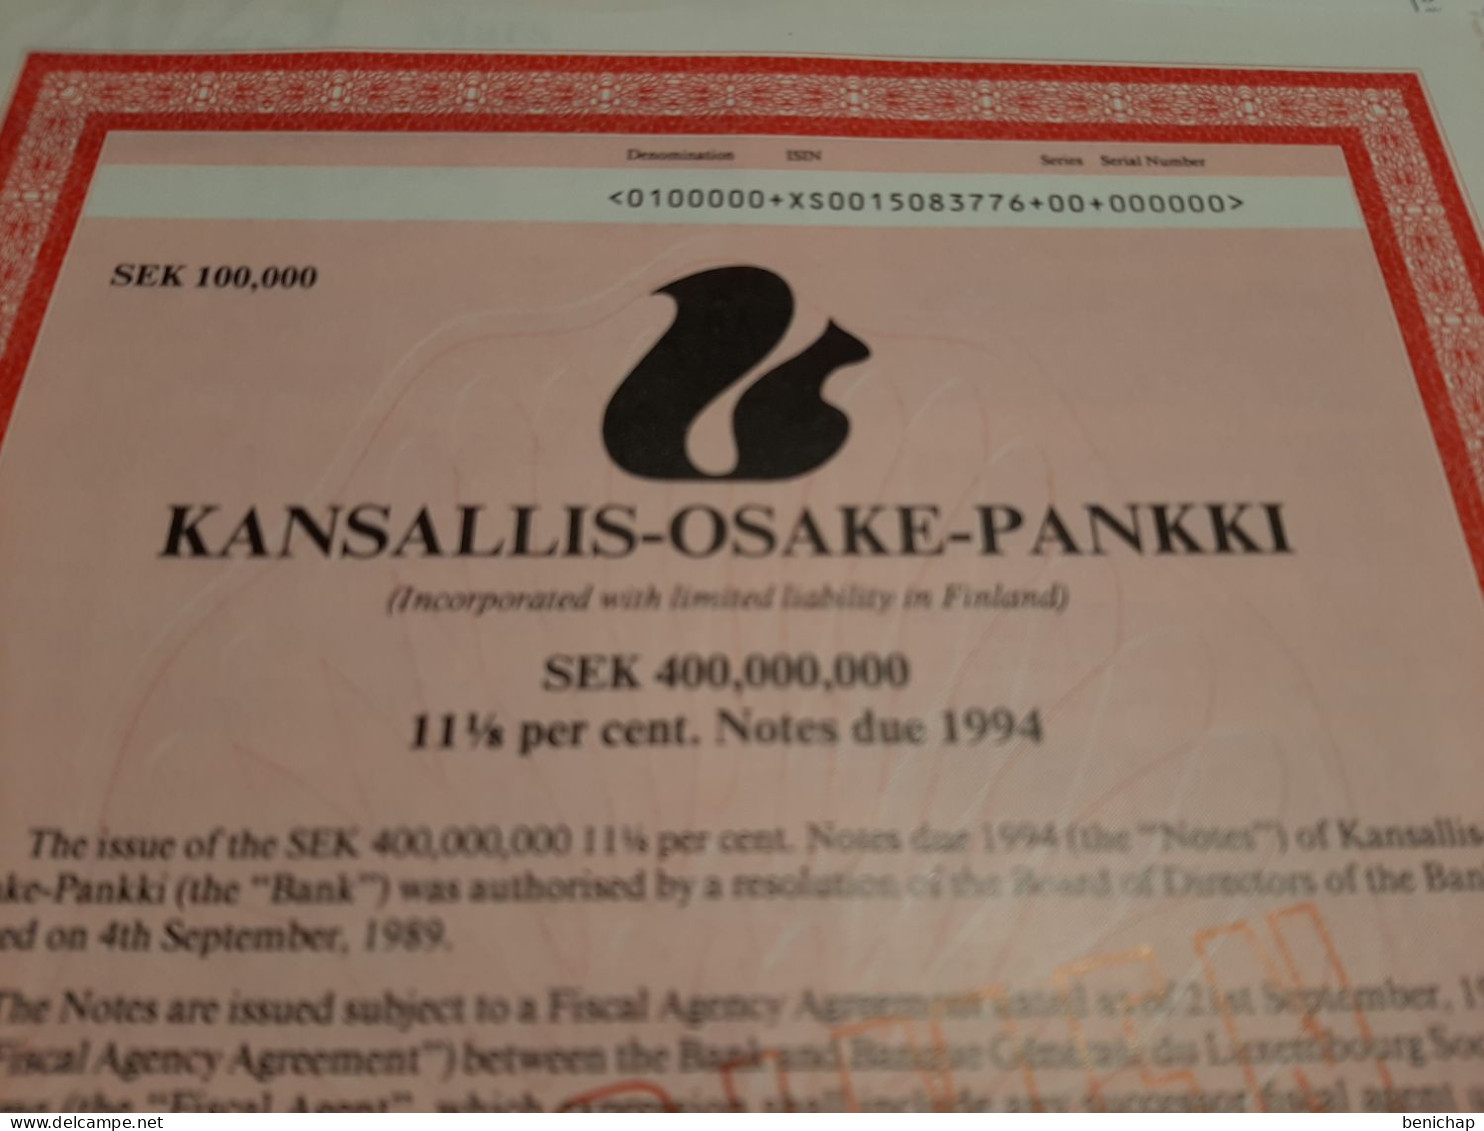 Bank Kansalis - Osake - Pankki - Titre "Specimen" - SEK 100.000 Couronnes Suédoise - 21 Septembre 1989. - Banque & Assurance